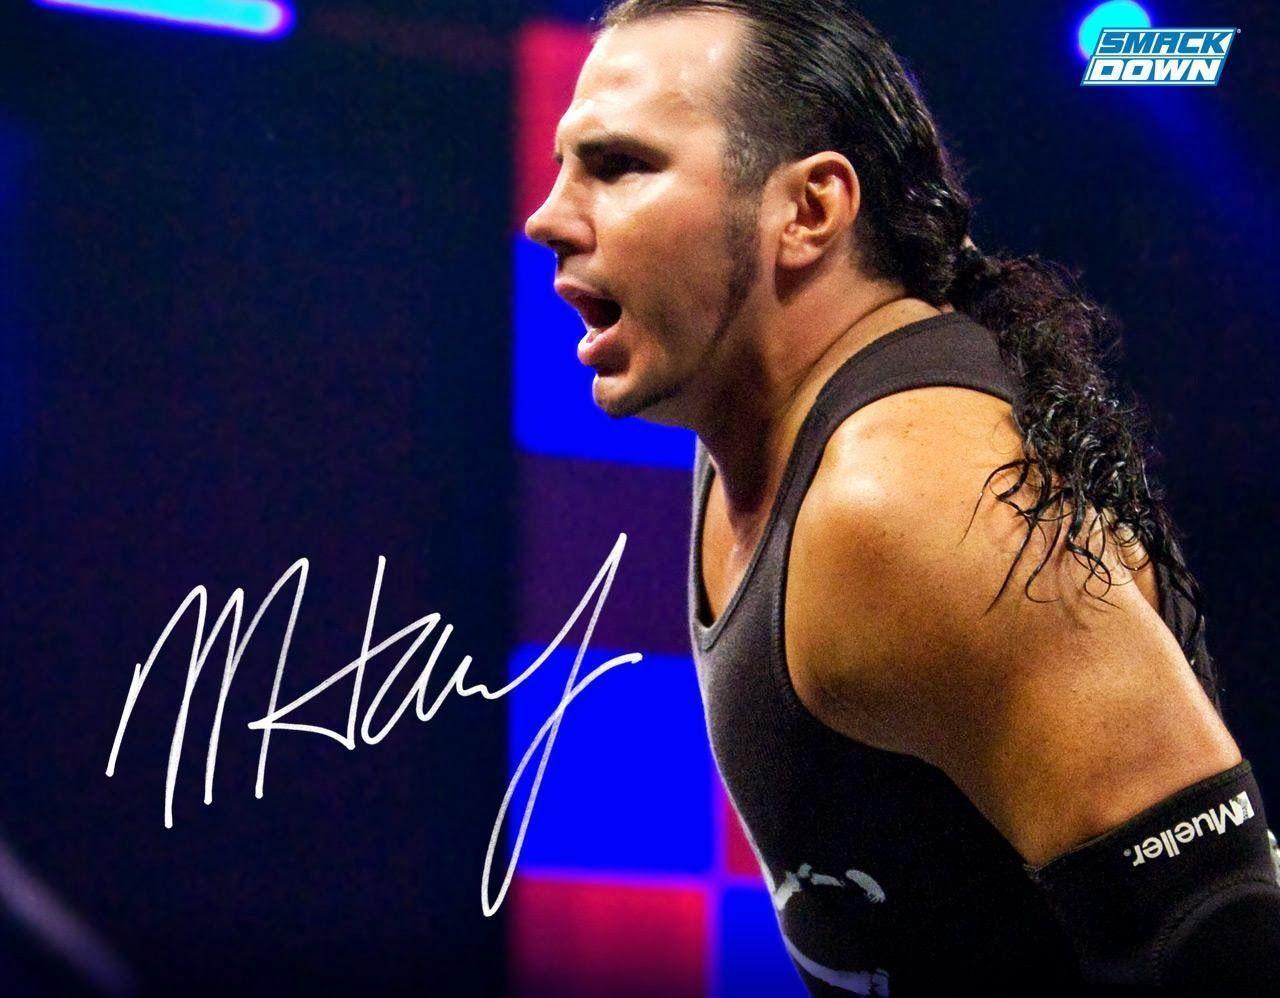 Matt Hardy HD Wallpaper Free Download. WWE HD WALLPAPER FREE